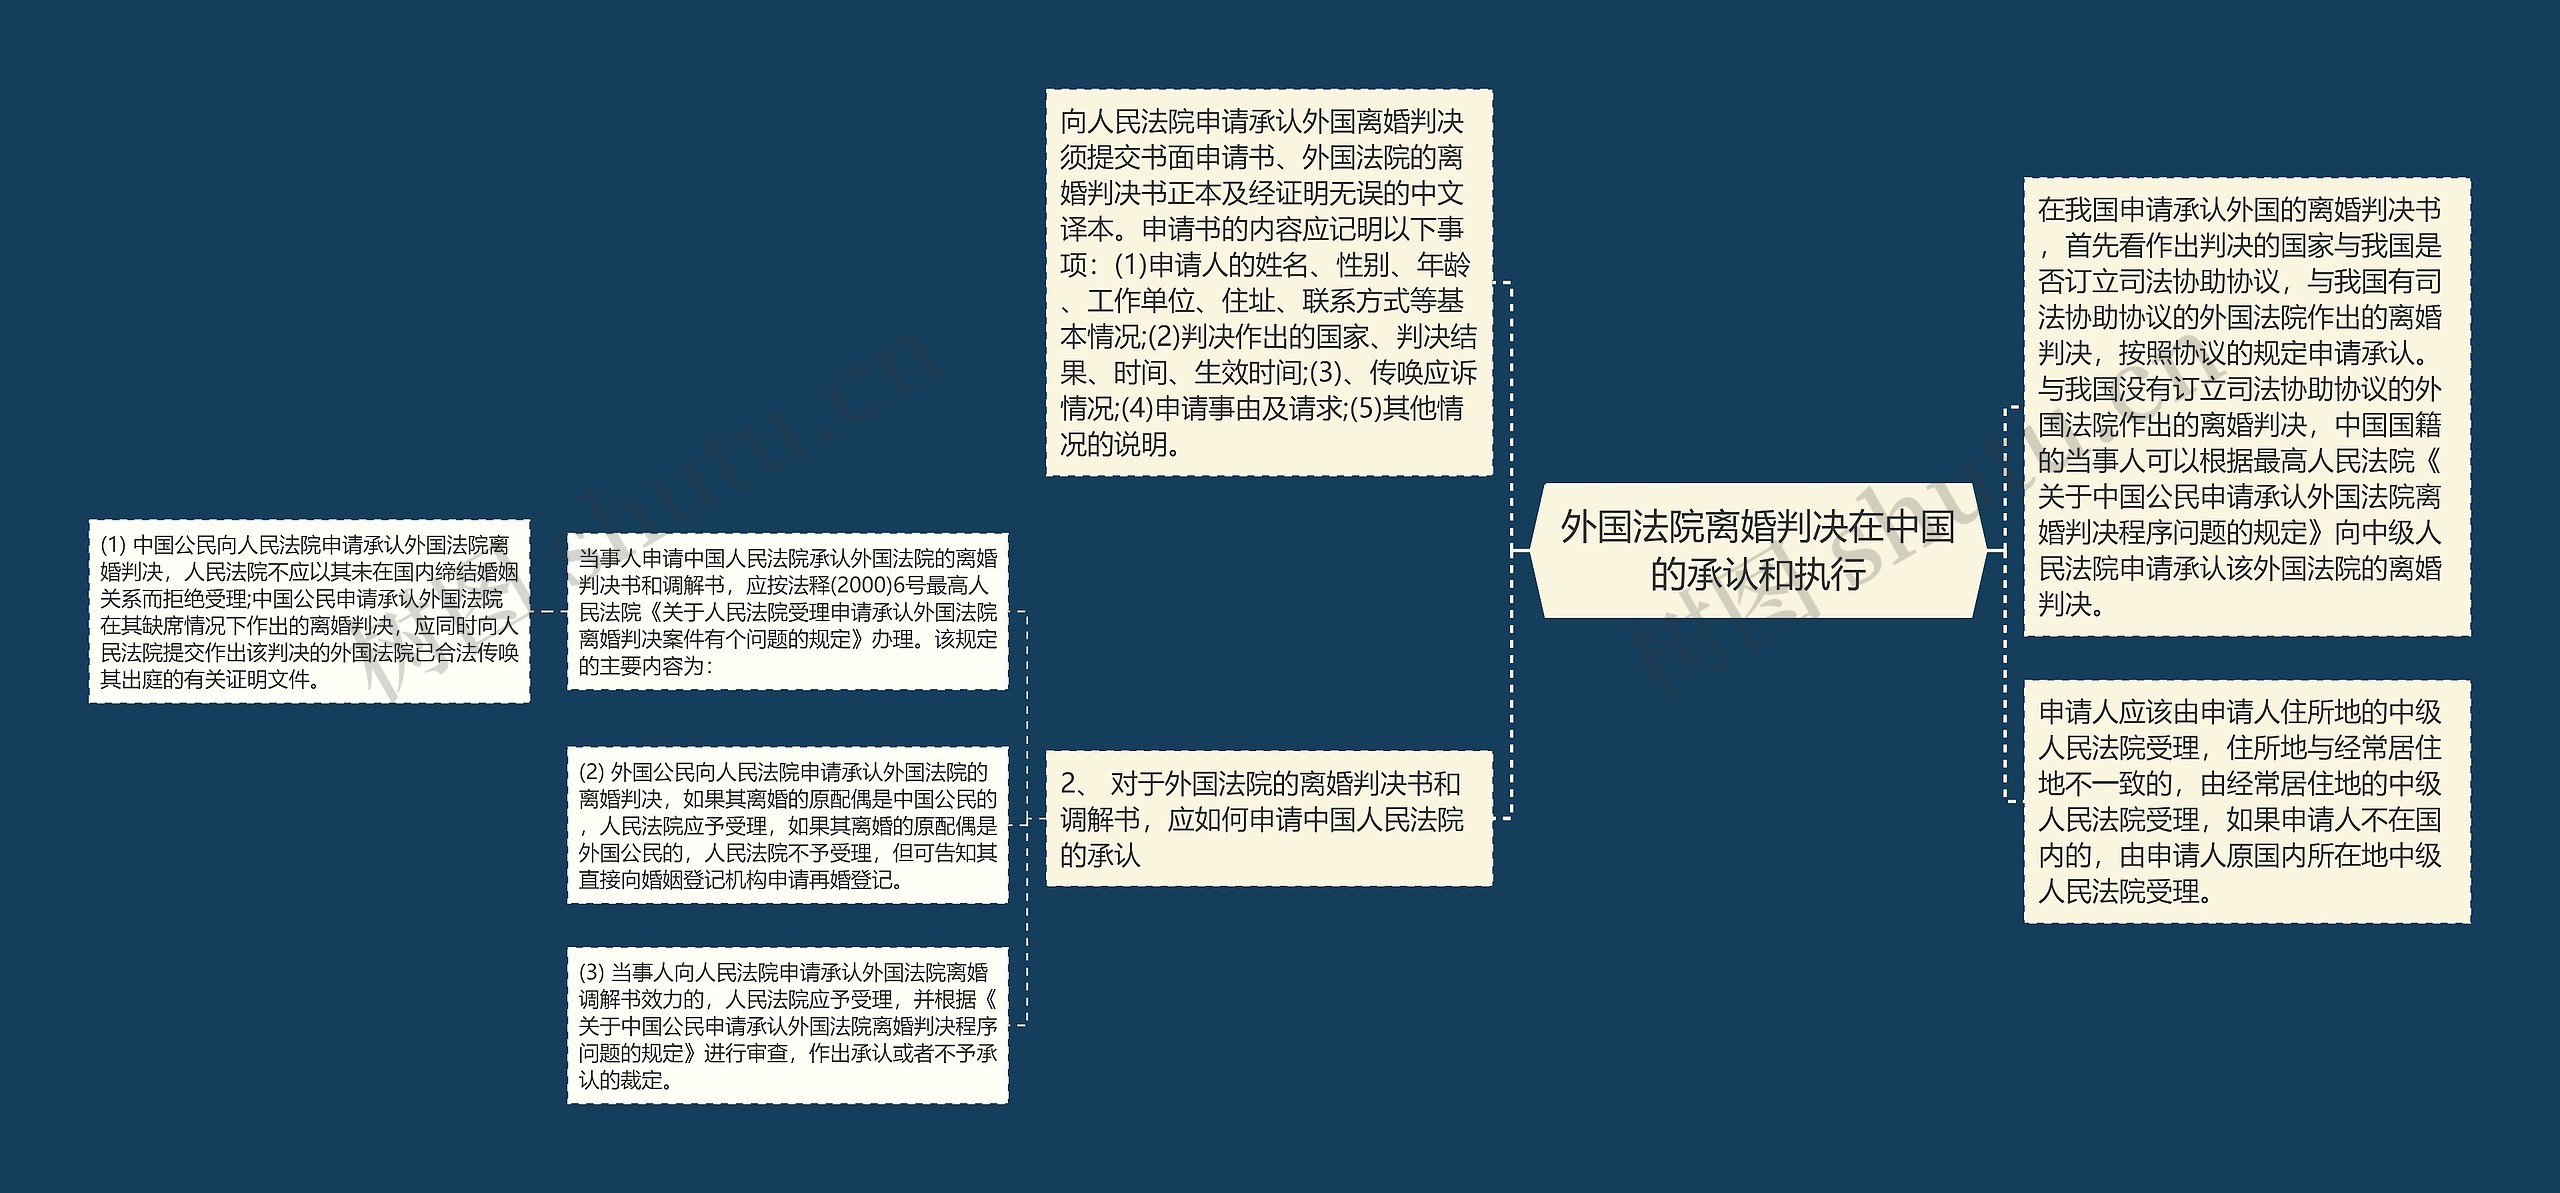 外国法院离婚判决在中国的承认和执行